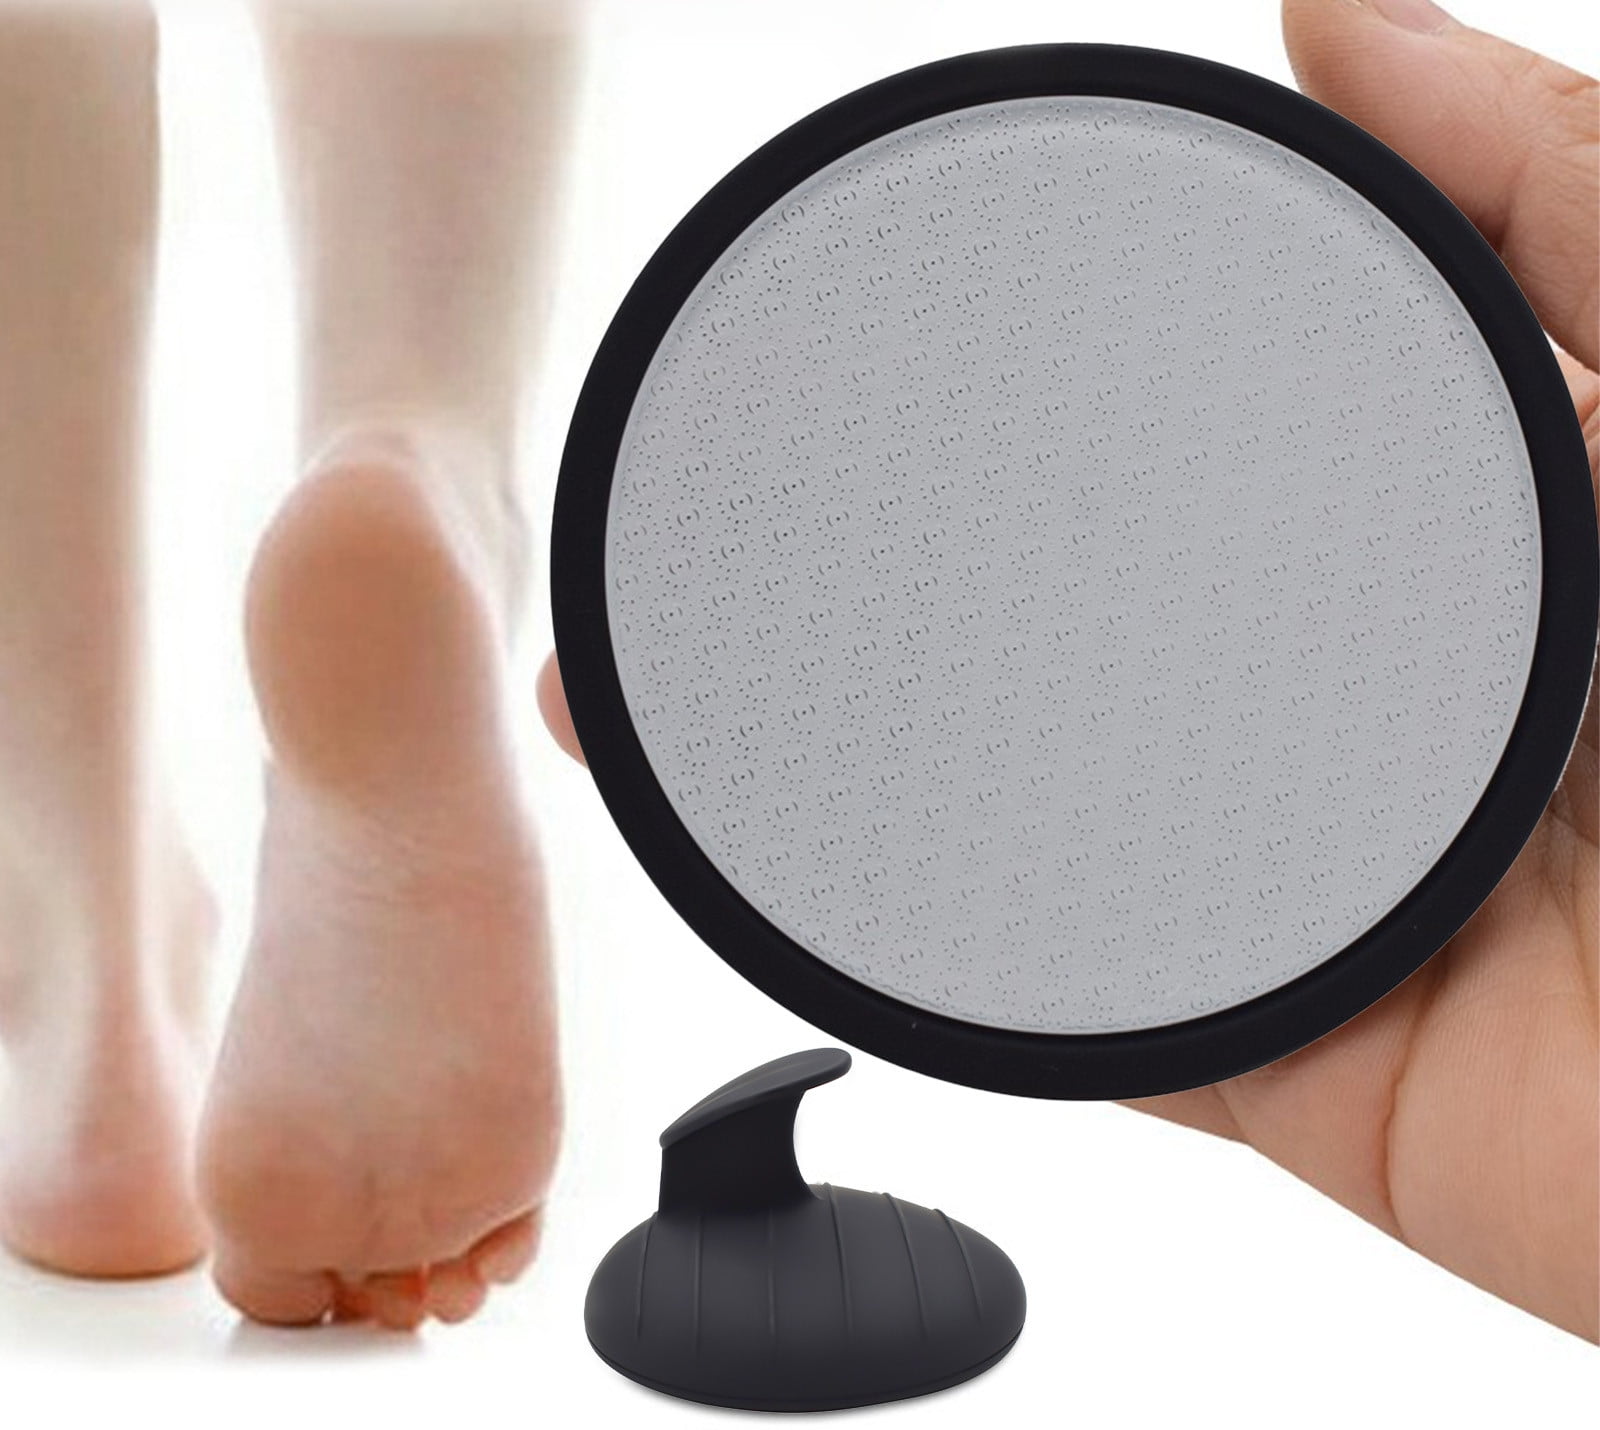  Obnoxi Glass Foot File Callus Remover for Feet - Foot